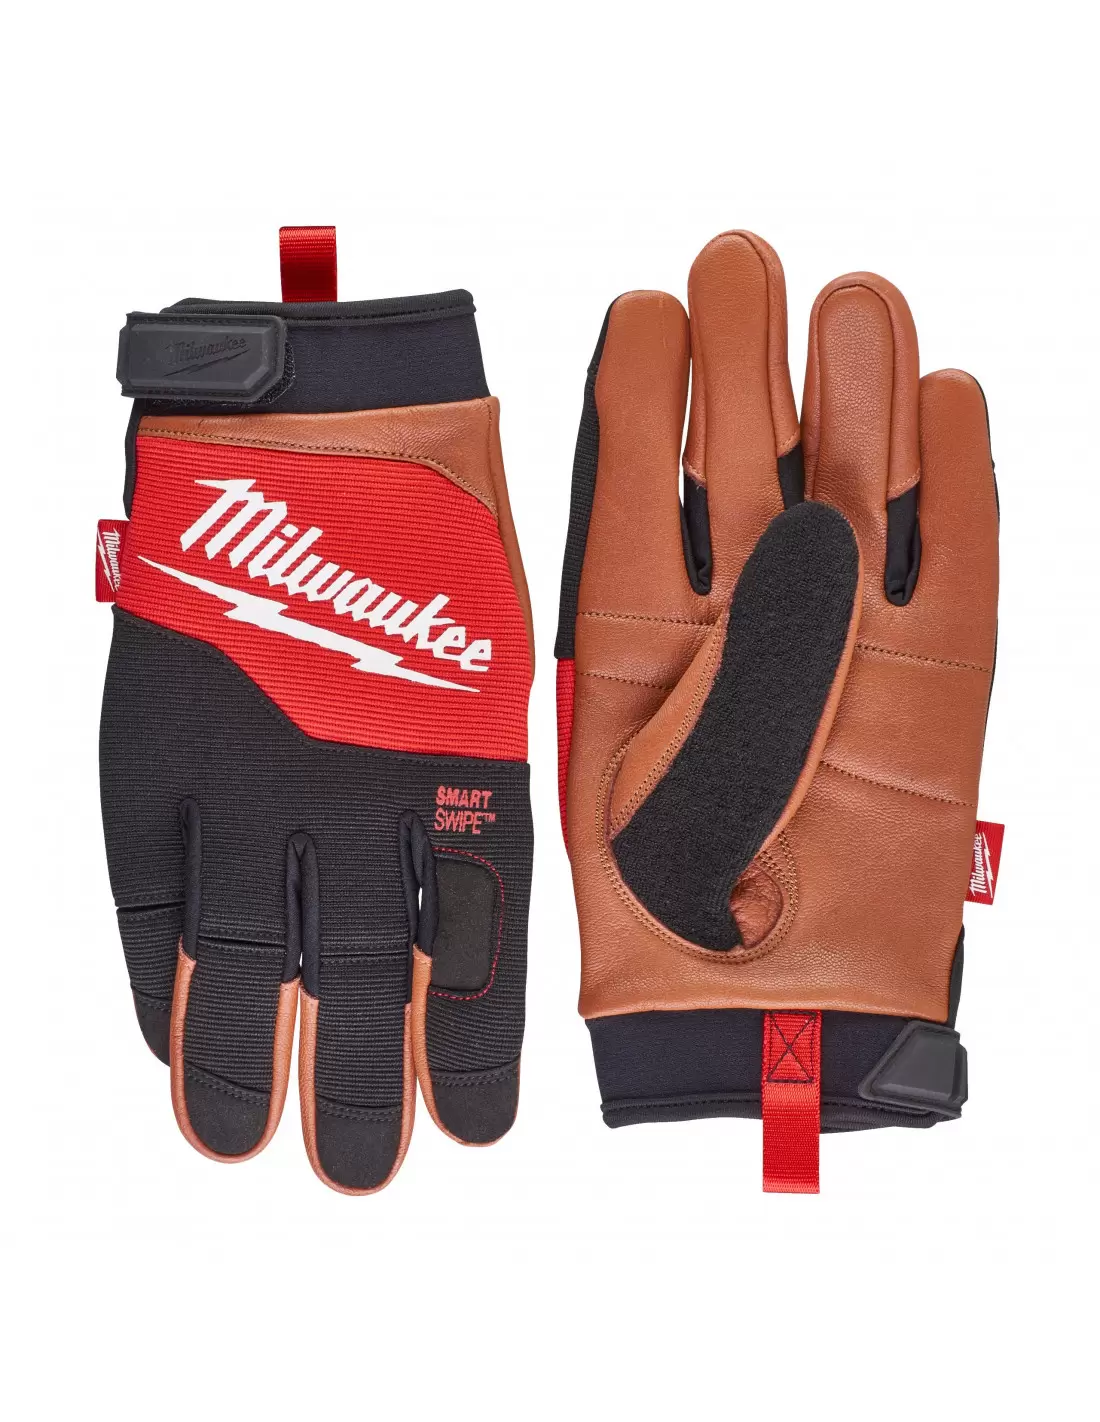 Achetez Milwaukee Lot de 12 gants anti-coupures classe 1 - Taille 9 (L):   ✓ Livraison & retours gratuits possibles (voir conditions)